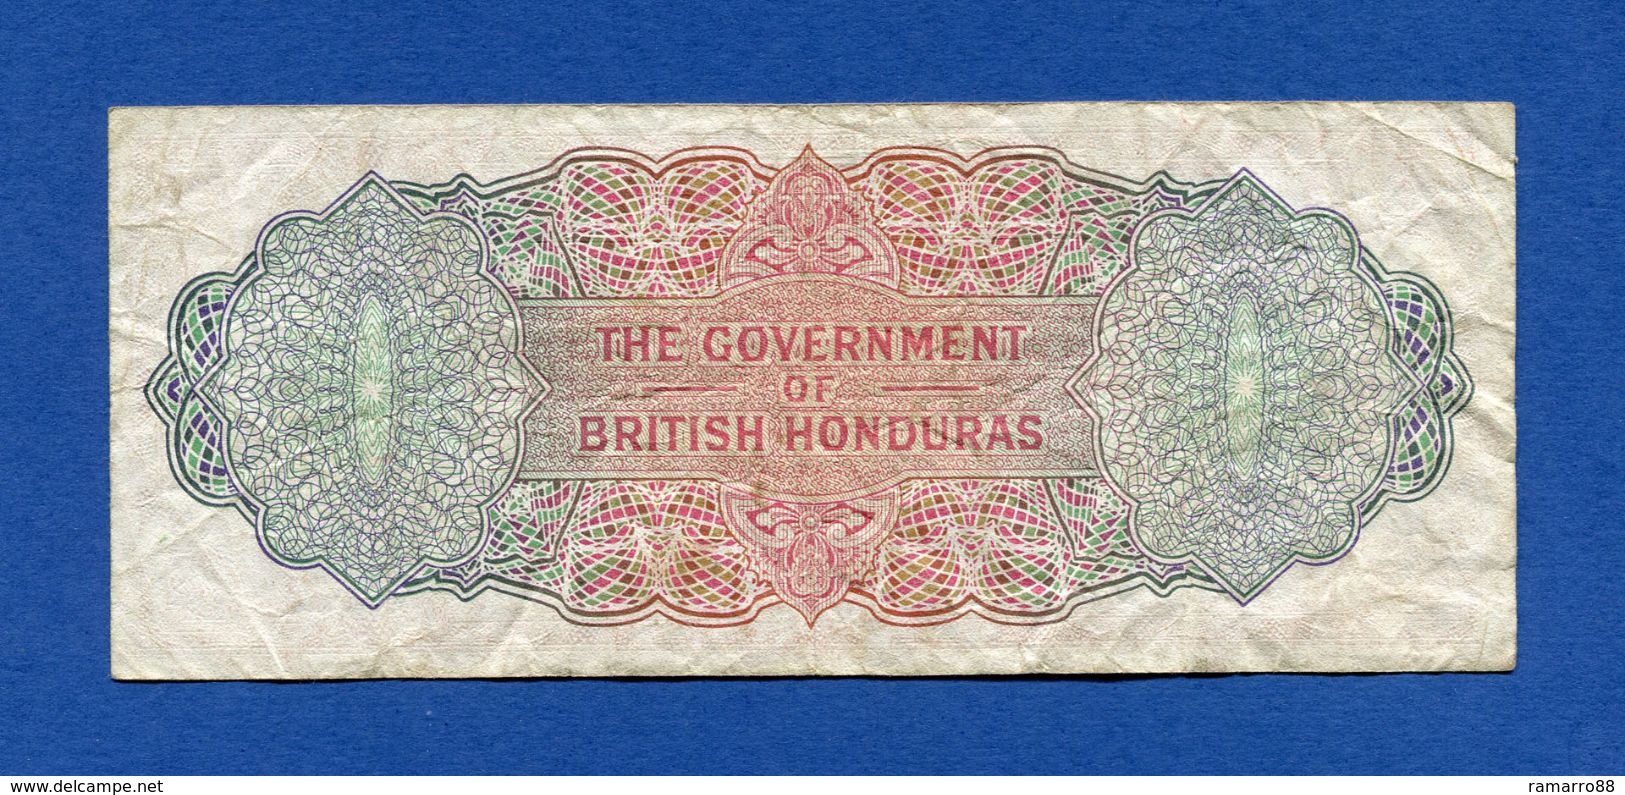 British Honduras / Belize 5 $ Dollars 1973 Queen Elizabeth II Pick 30c F+ - Belice